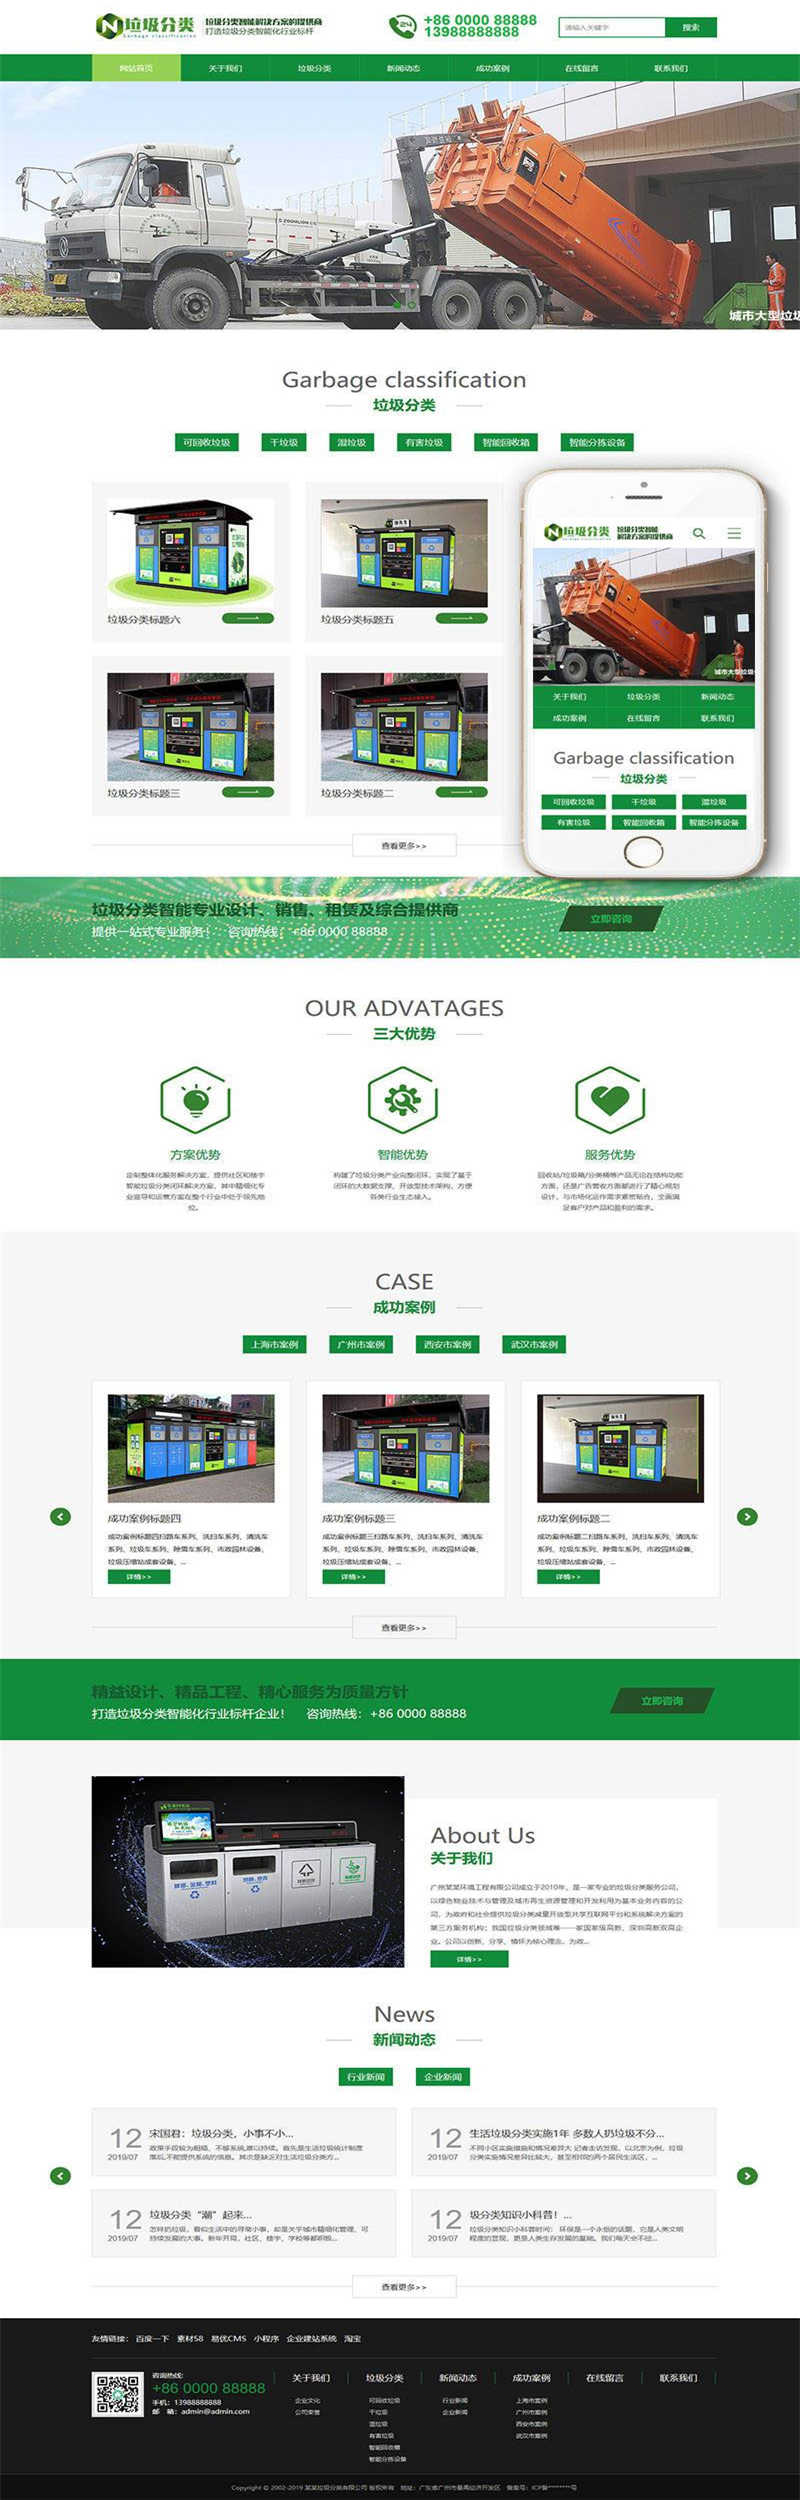 [企业源码]织梦dedecms绿色风格垃圾分类企业网站模板(带手机移动端)插图